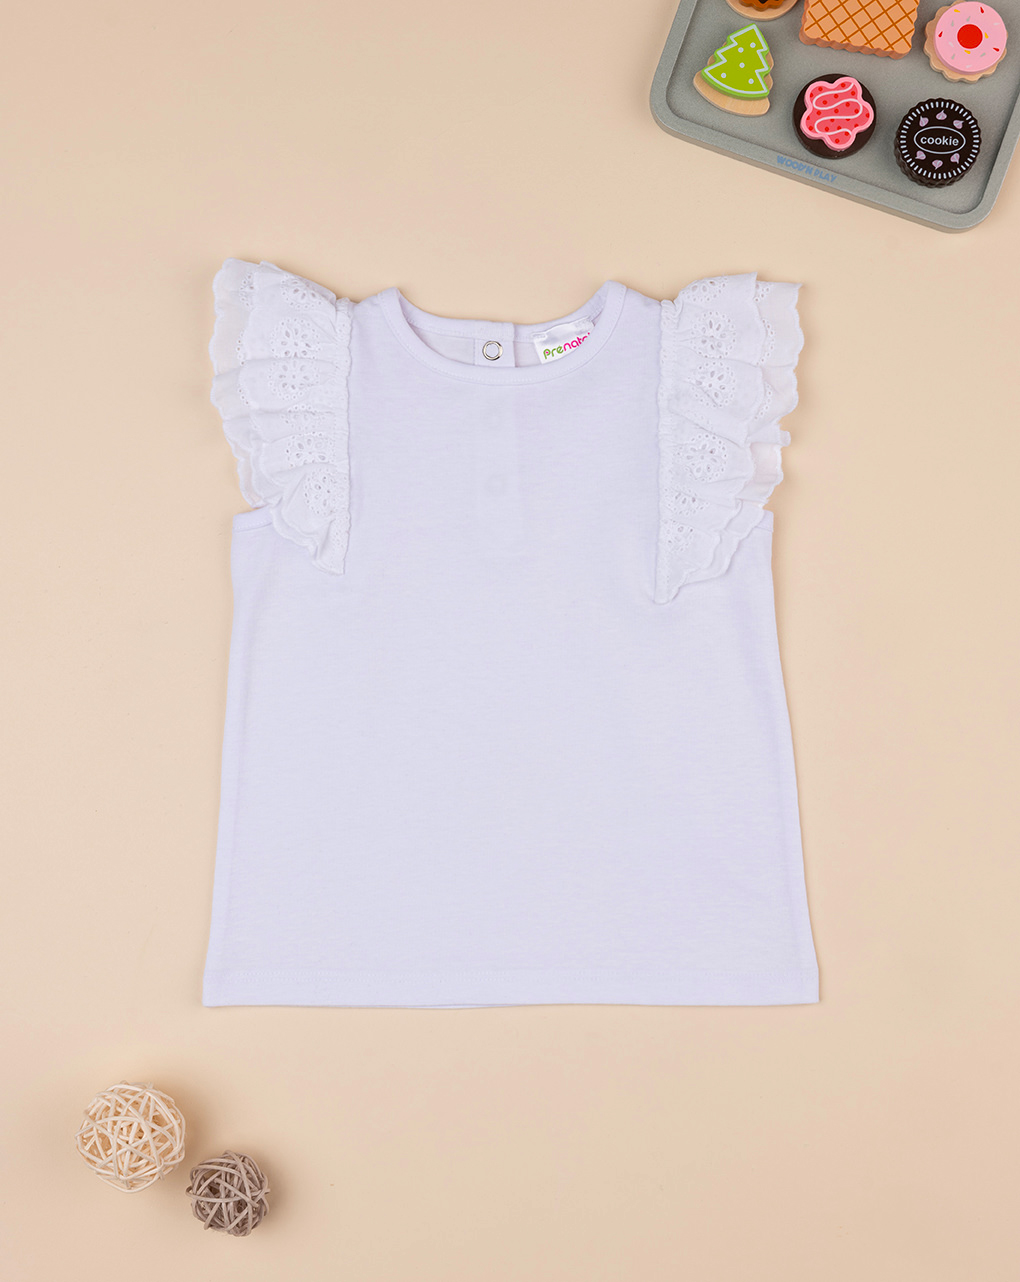 βρεφικό t-shirt λευκό με δαντέλα sangallo για κορίτσι